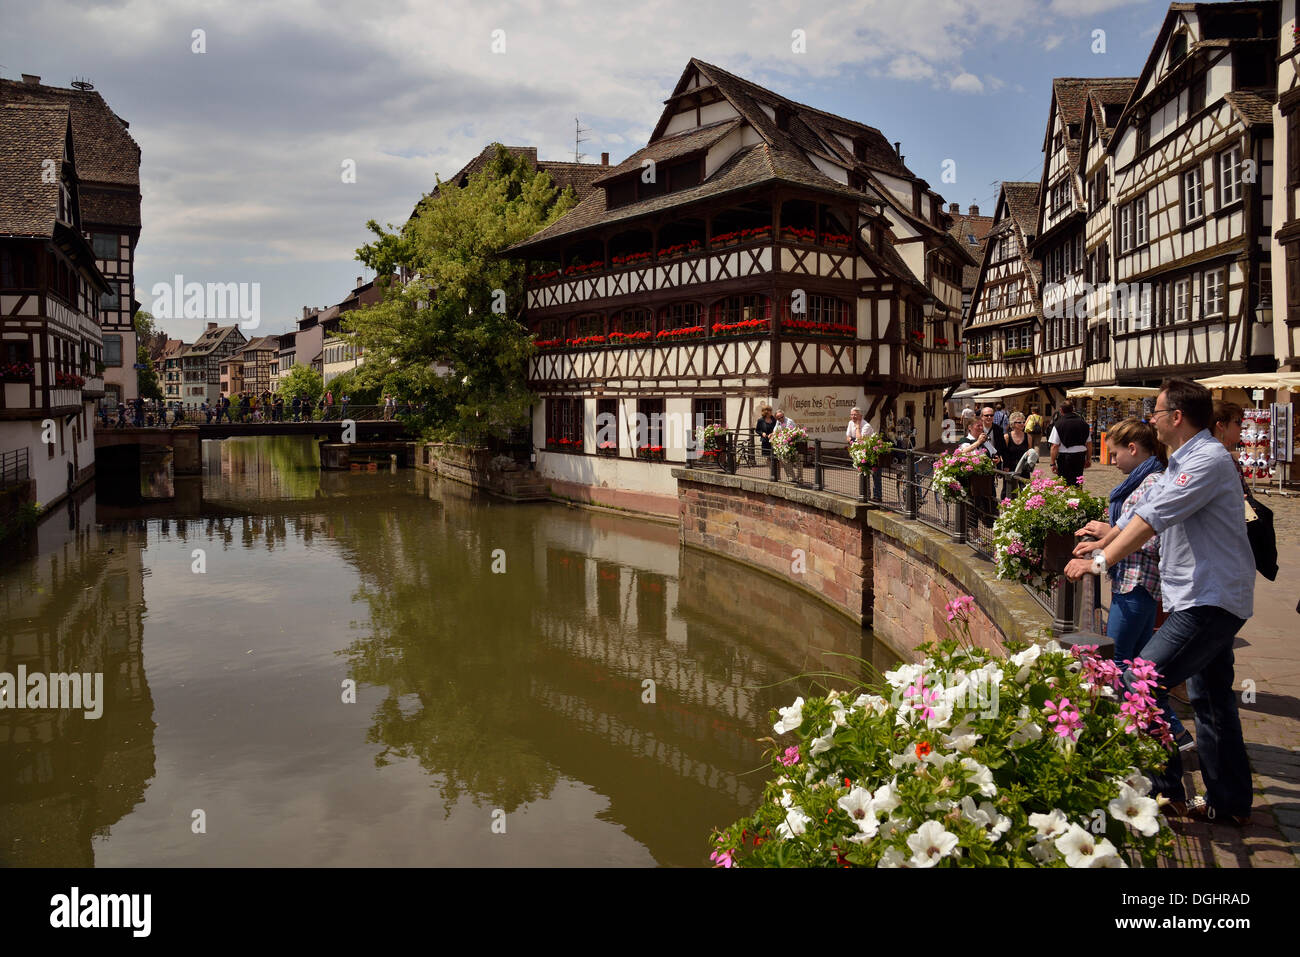 Maisons à pans de bois sur la rivière Ill, quartier des tanneurs, Petite France, Strasbourg, Alsace, France, Europe Banque D'Images